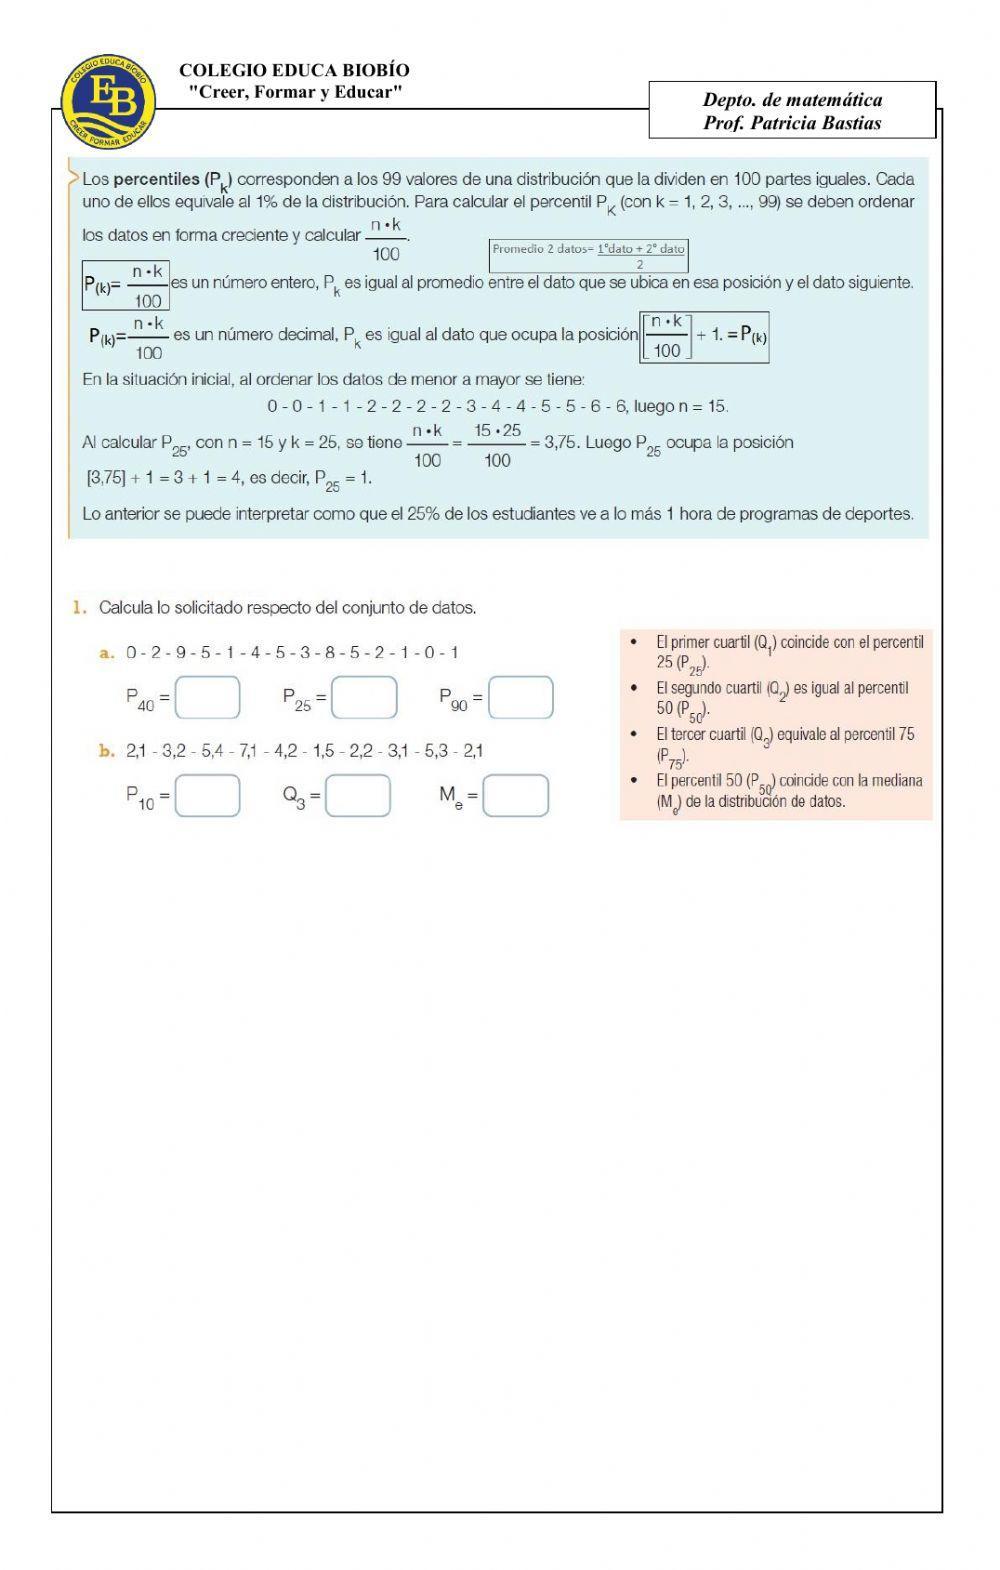 CLASE 31 8° Representar en diagramas medidas de posición como percentiles y cuartiles